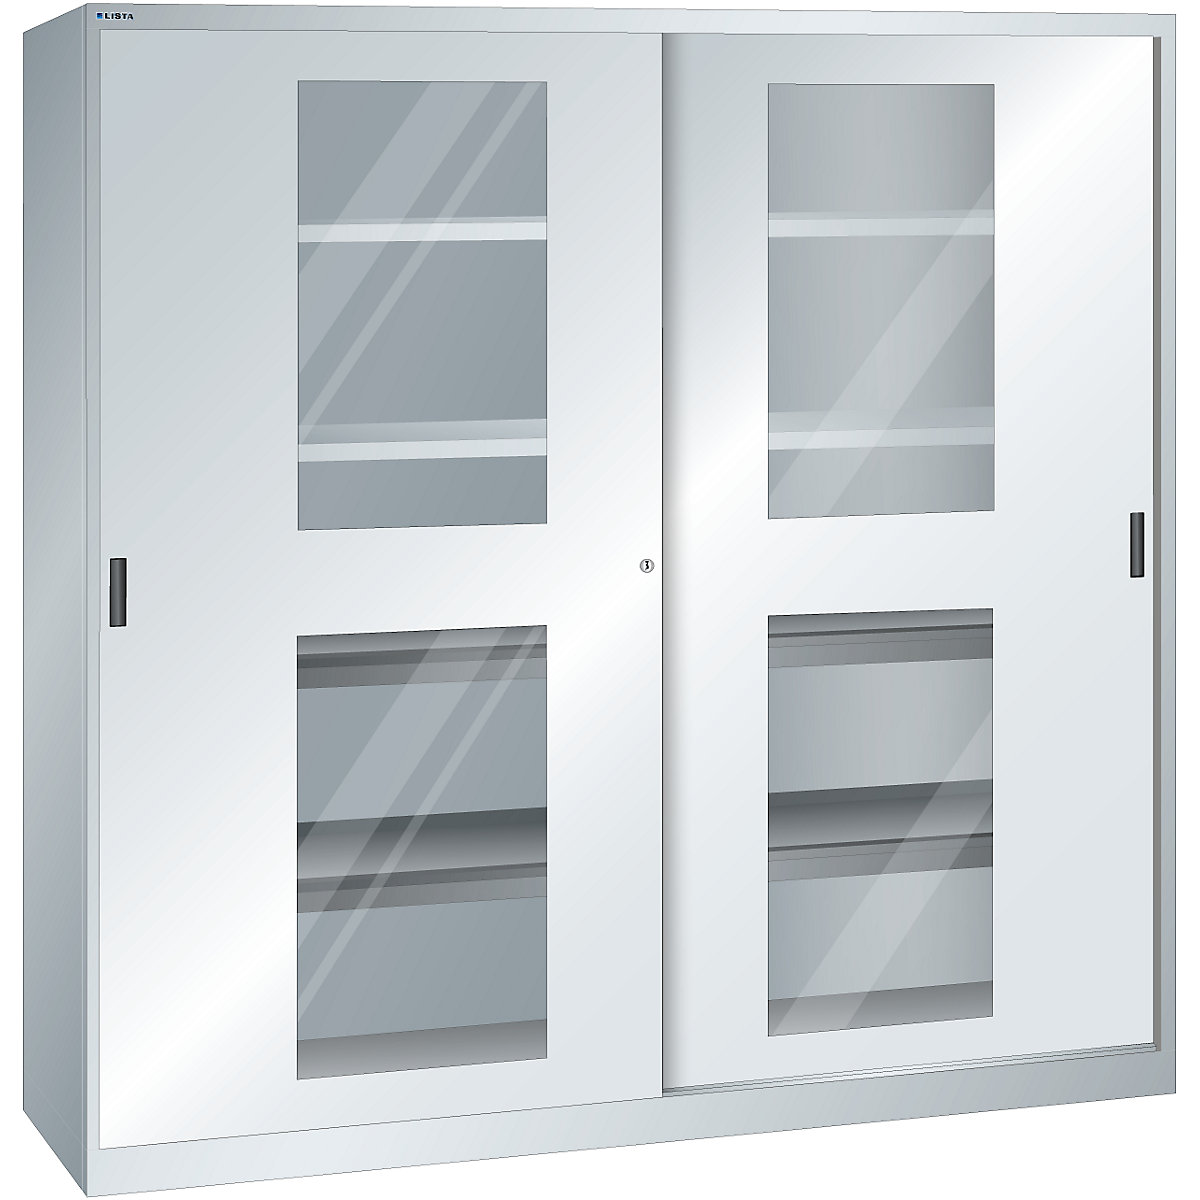 Dulap cu uși glisante cu geamuri transparente – LISTA (Imagine produs 4)-3